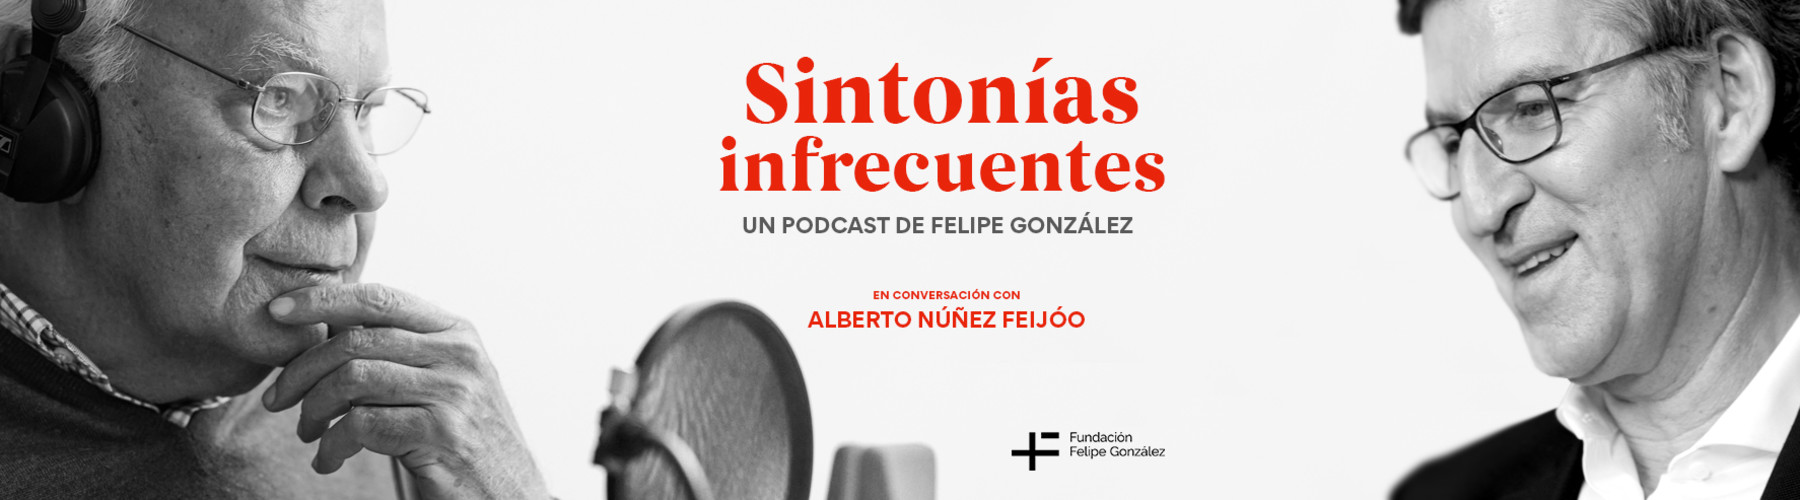 Felipe González y Alberto Núñez Feijóo conversan en el cuarto episodio de Sintonías infrecuentes, el podcast que el expresidente del Gobierno tiene en Podimo